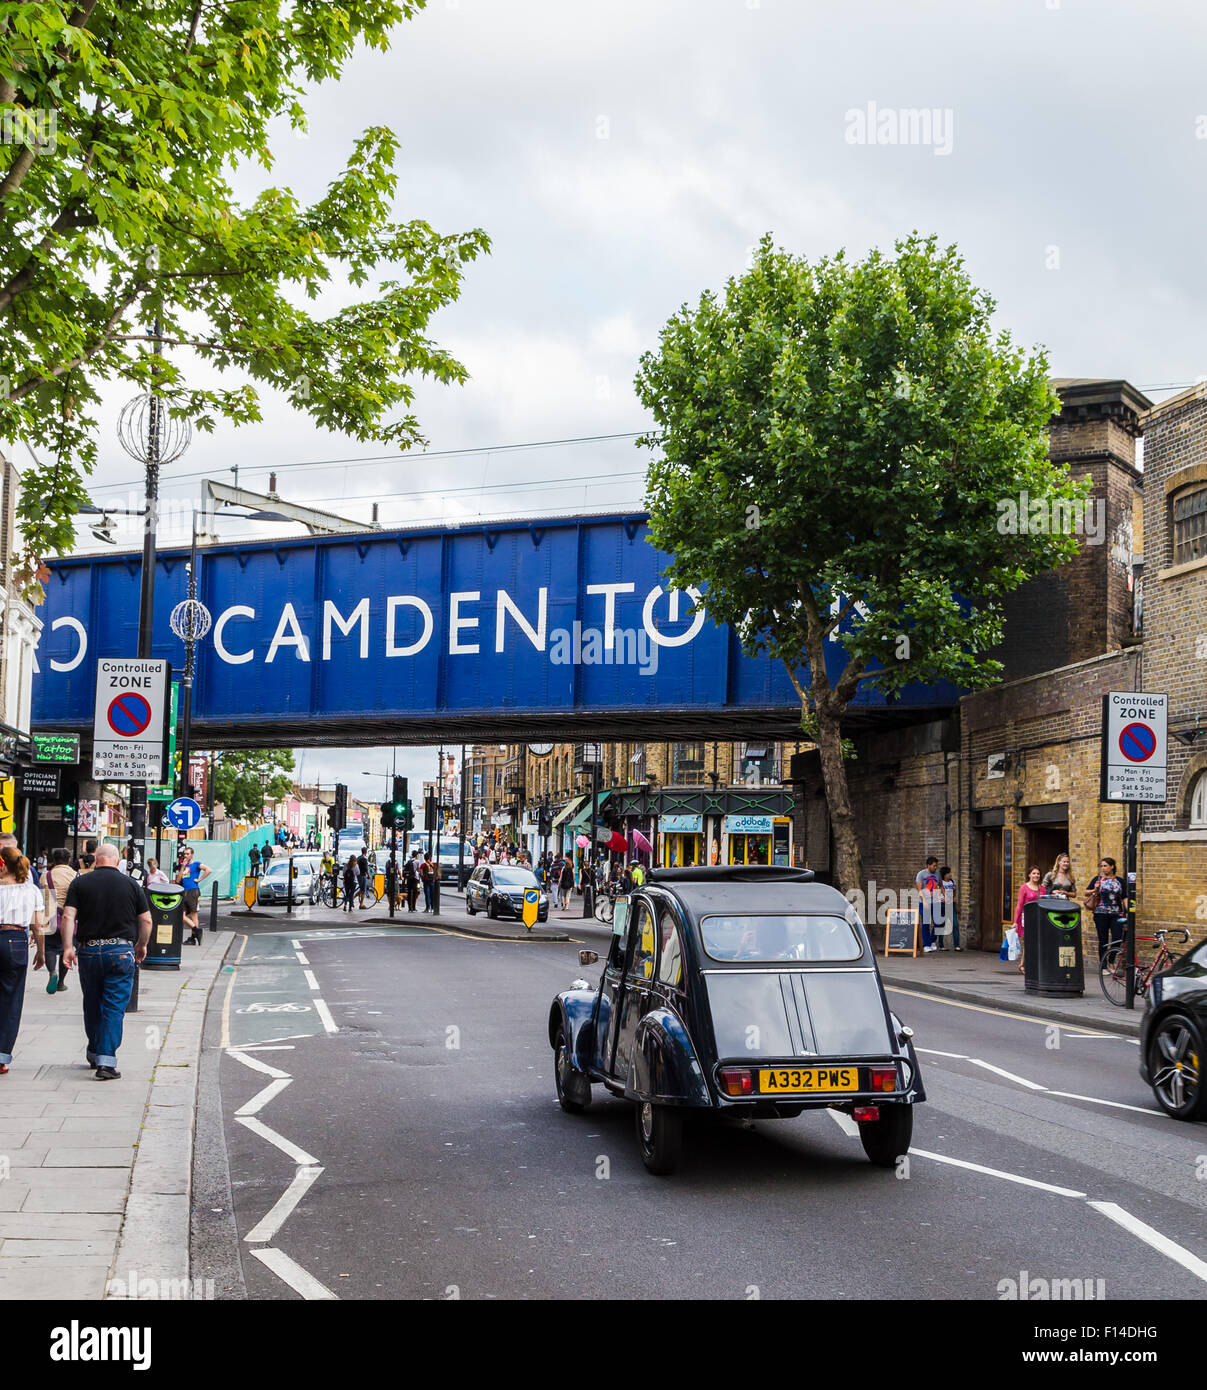 LONDON, UK 20. Juli 2015: eine Brücke mit den Worten Camden Town in London während des Tages. Autos und Menschen zu sehen. Stockfoto